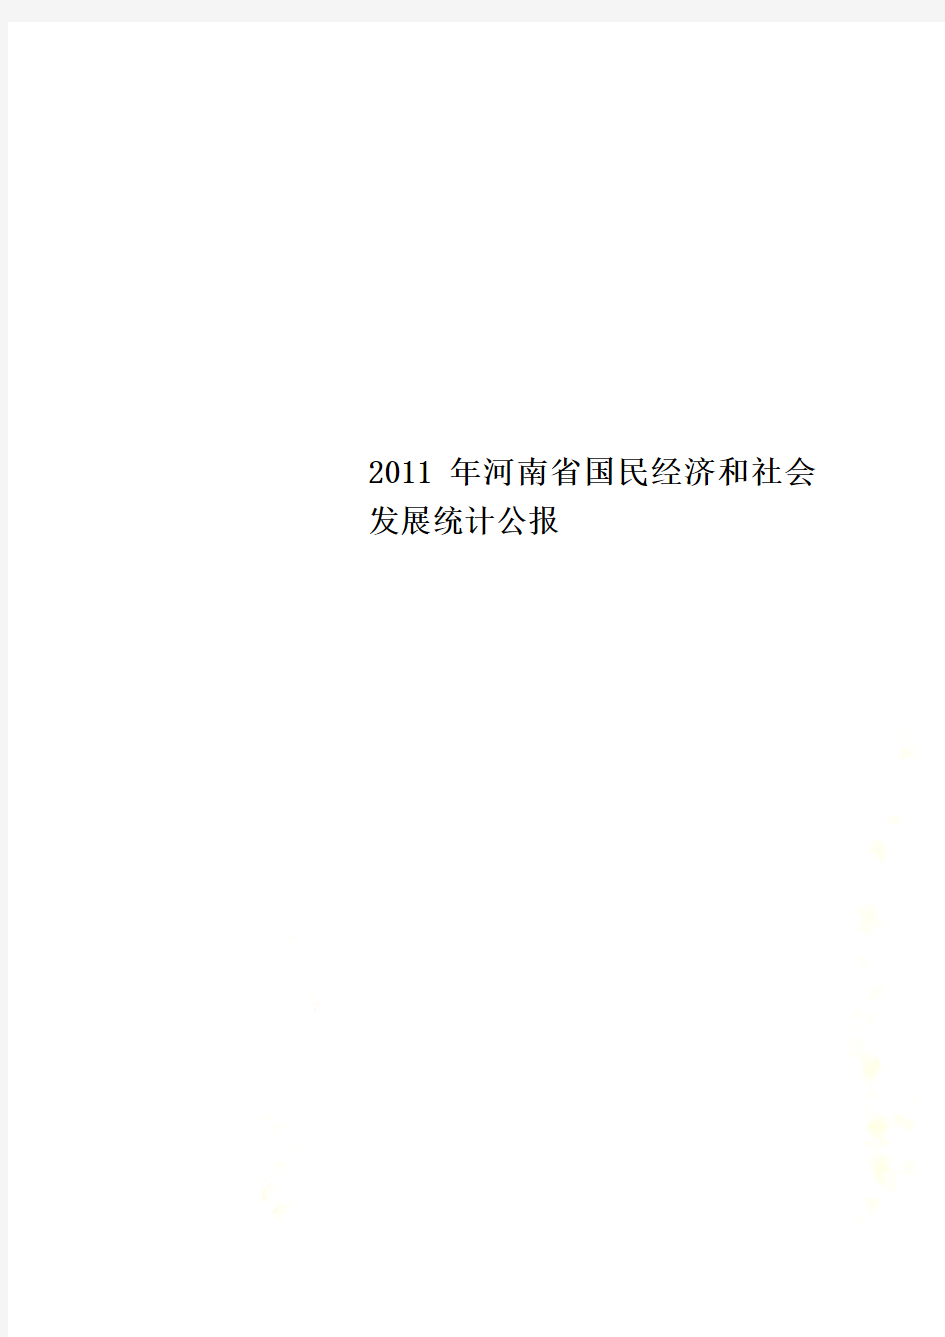 2011年河南省国民经济和社会发展统计公报